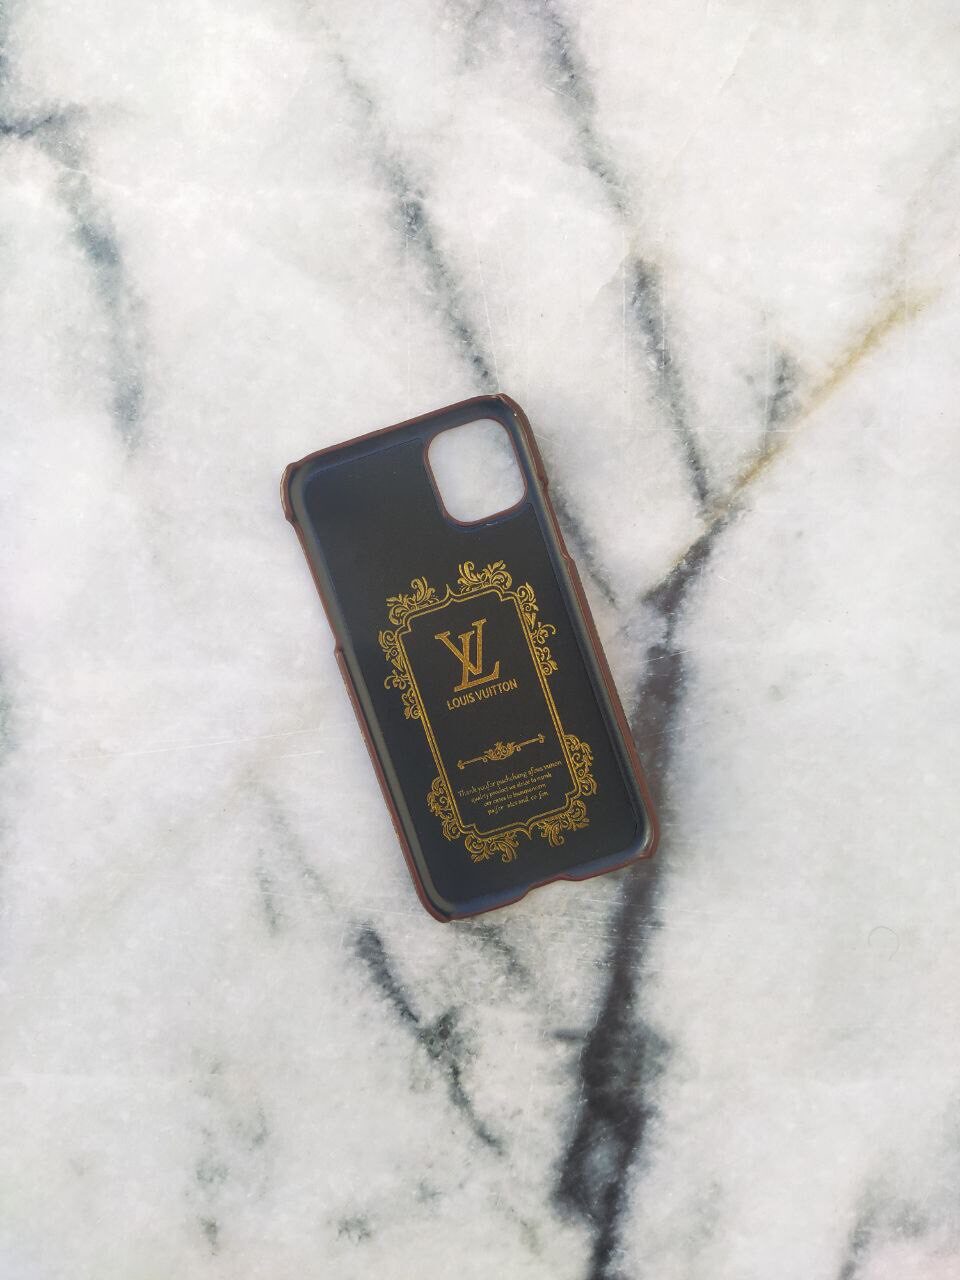 Louis Vuitton tiene sus fundas para iPhone con un diseño muy original